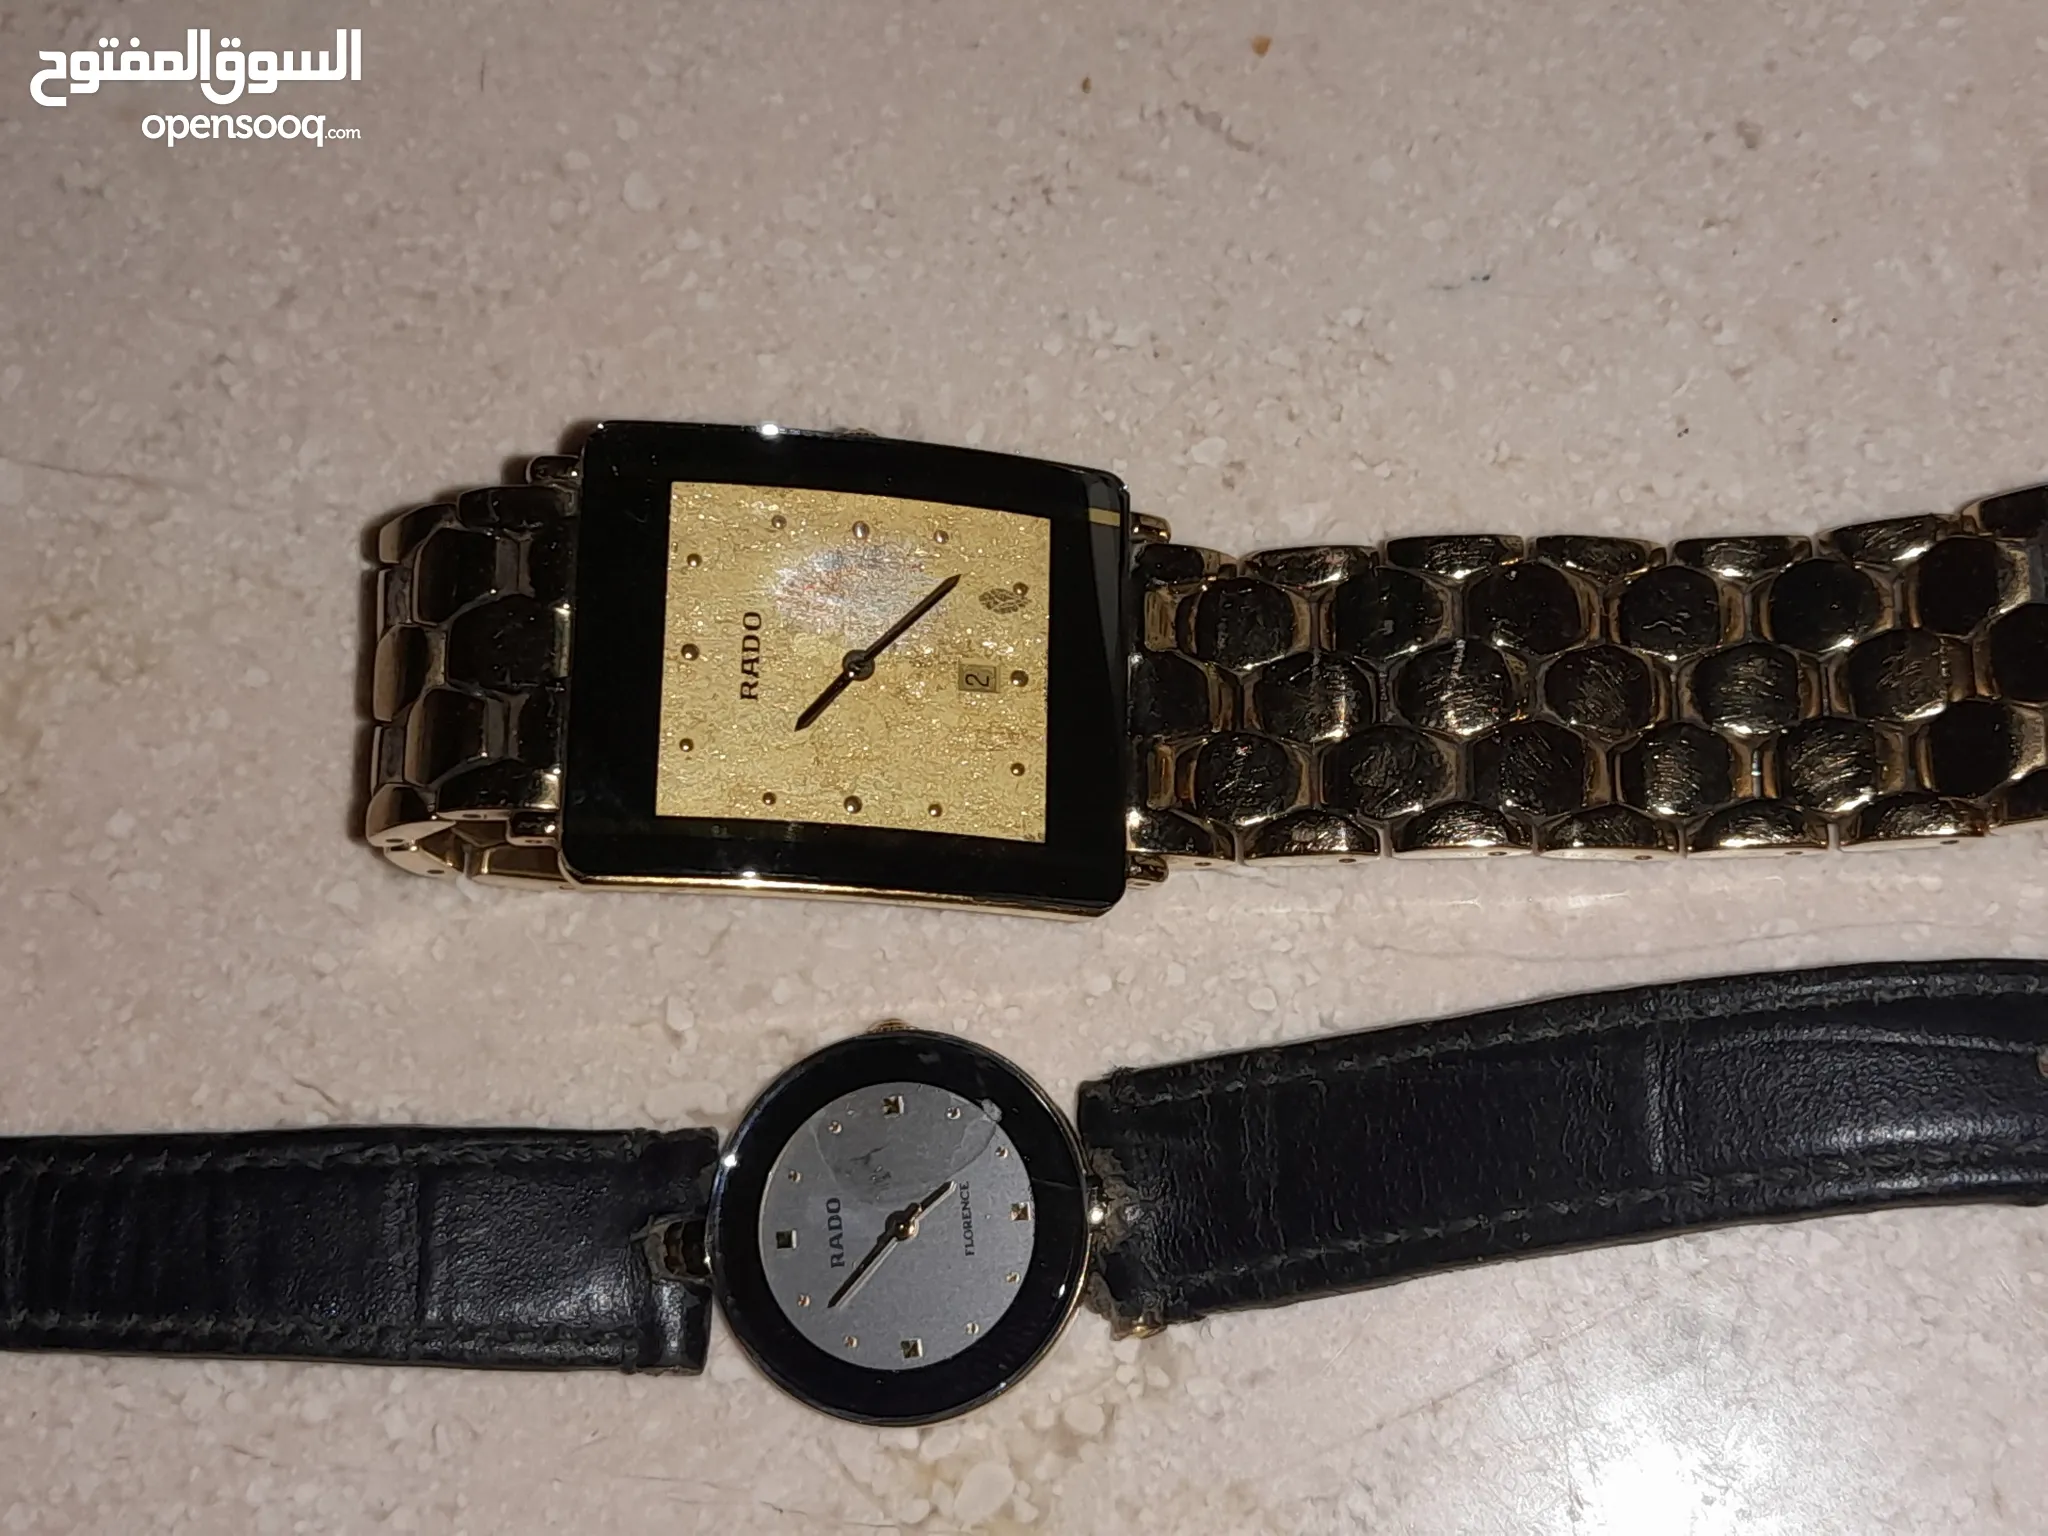 ساعات رادو نسائية للبيع في ليبيا - ساعات ذكية : ساعات الماس, ذهب , فضة |  السوق المفتوح